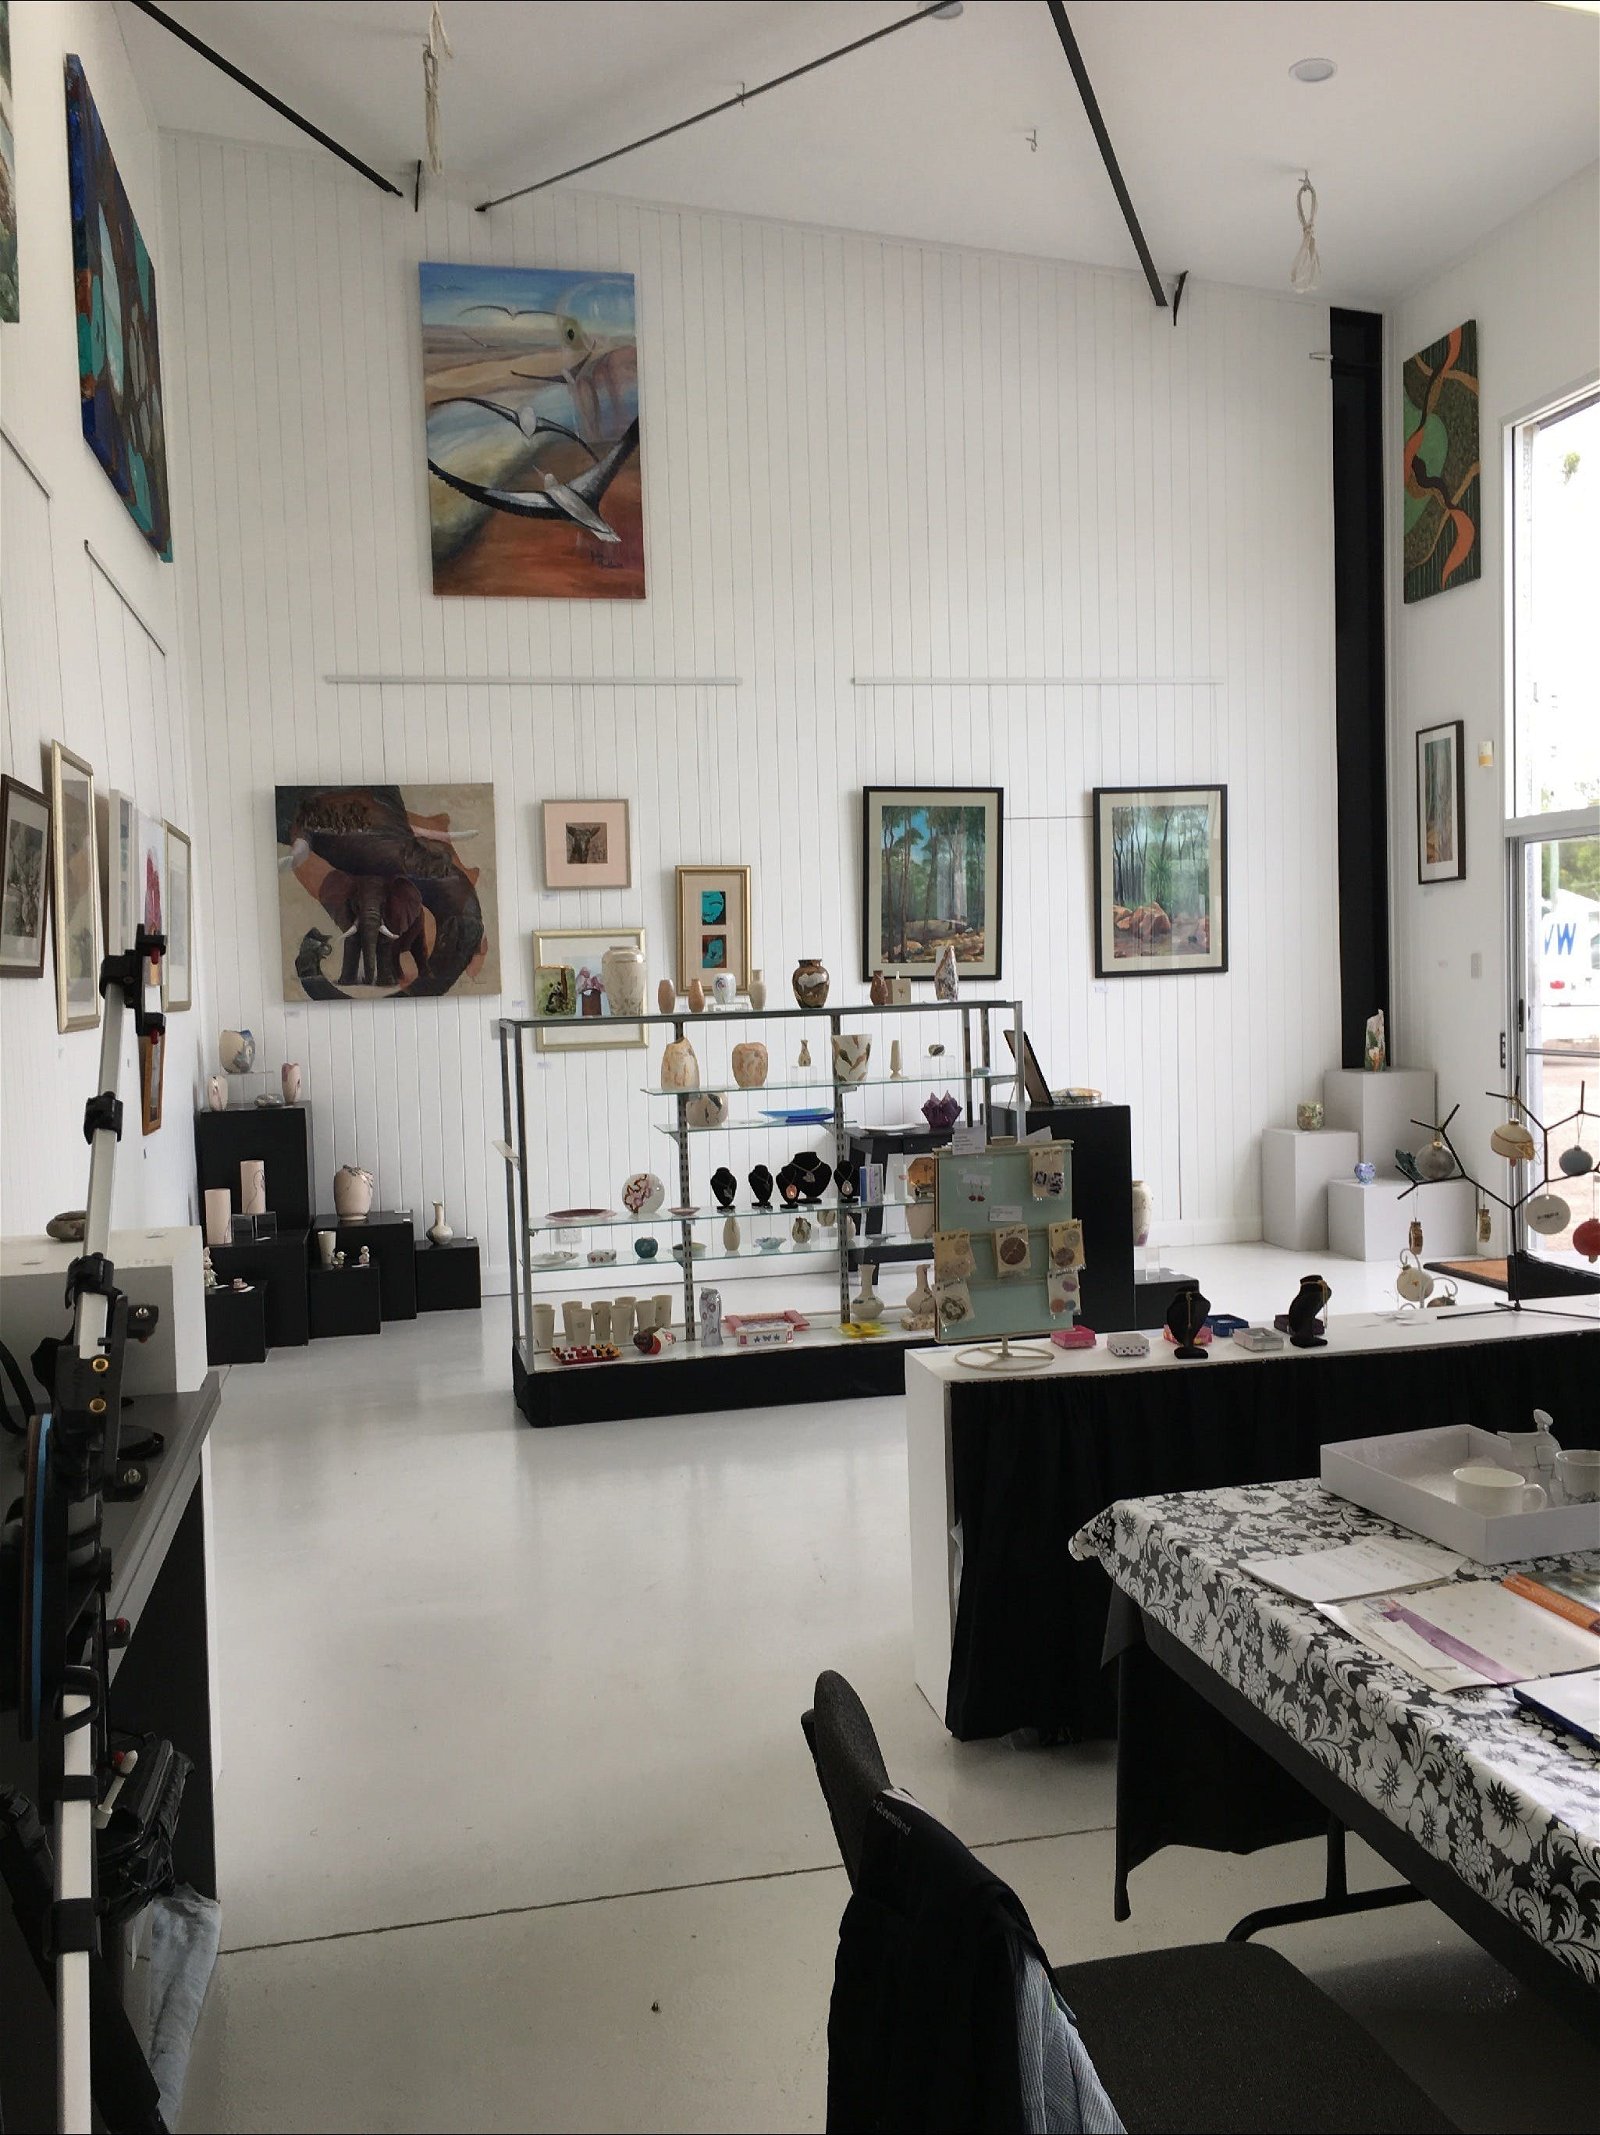 Julesart Studio/Gallery Dinmore